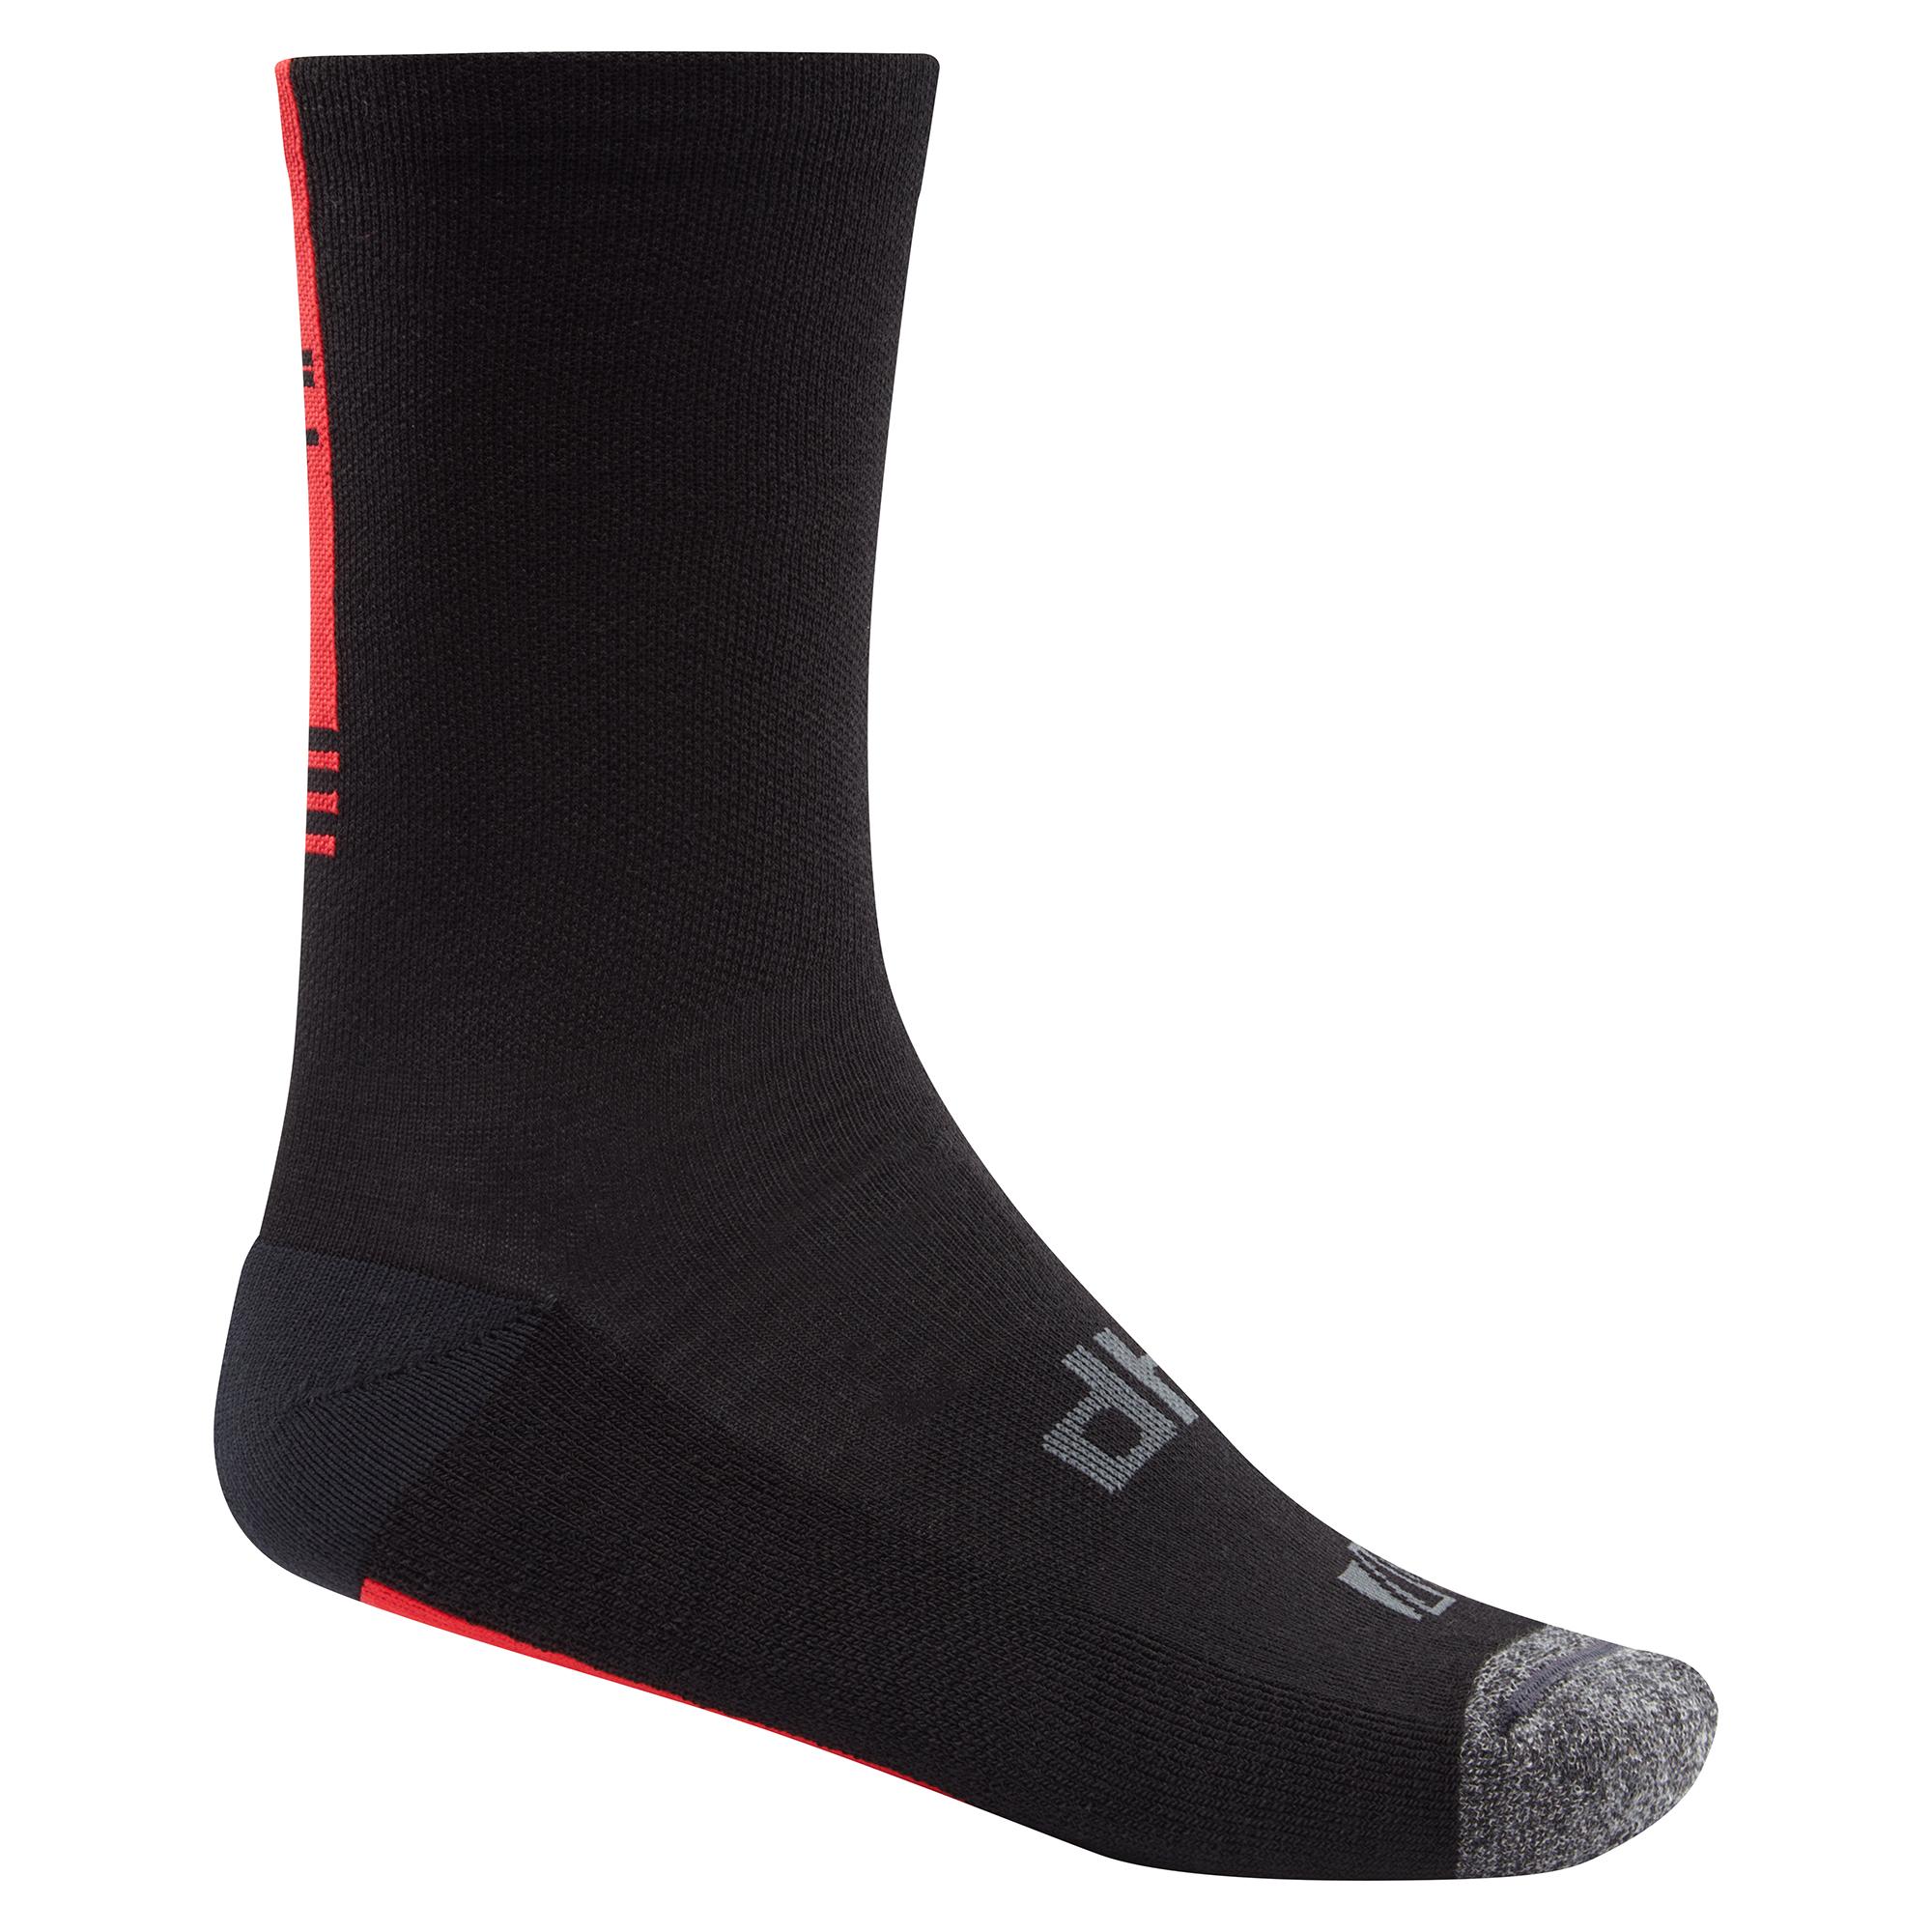 Dhb Aeron Winter Weight Merino Sock - Black/red